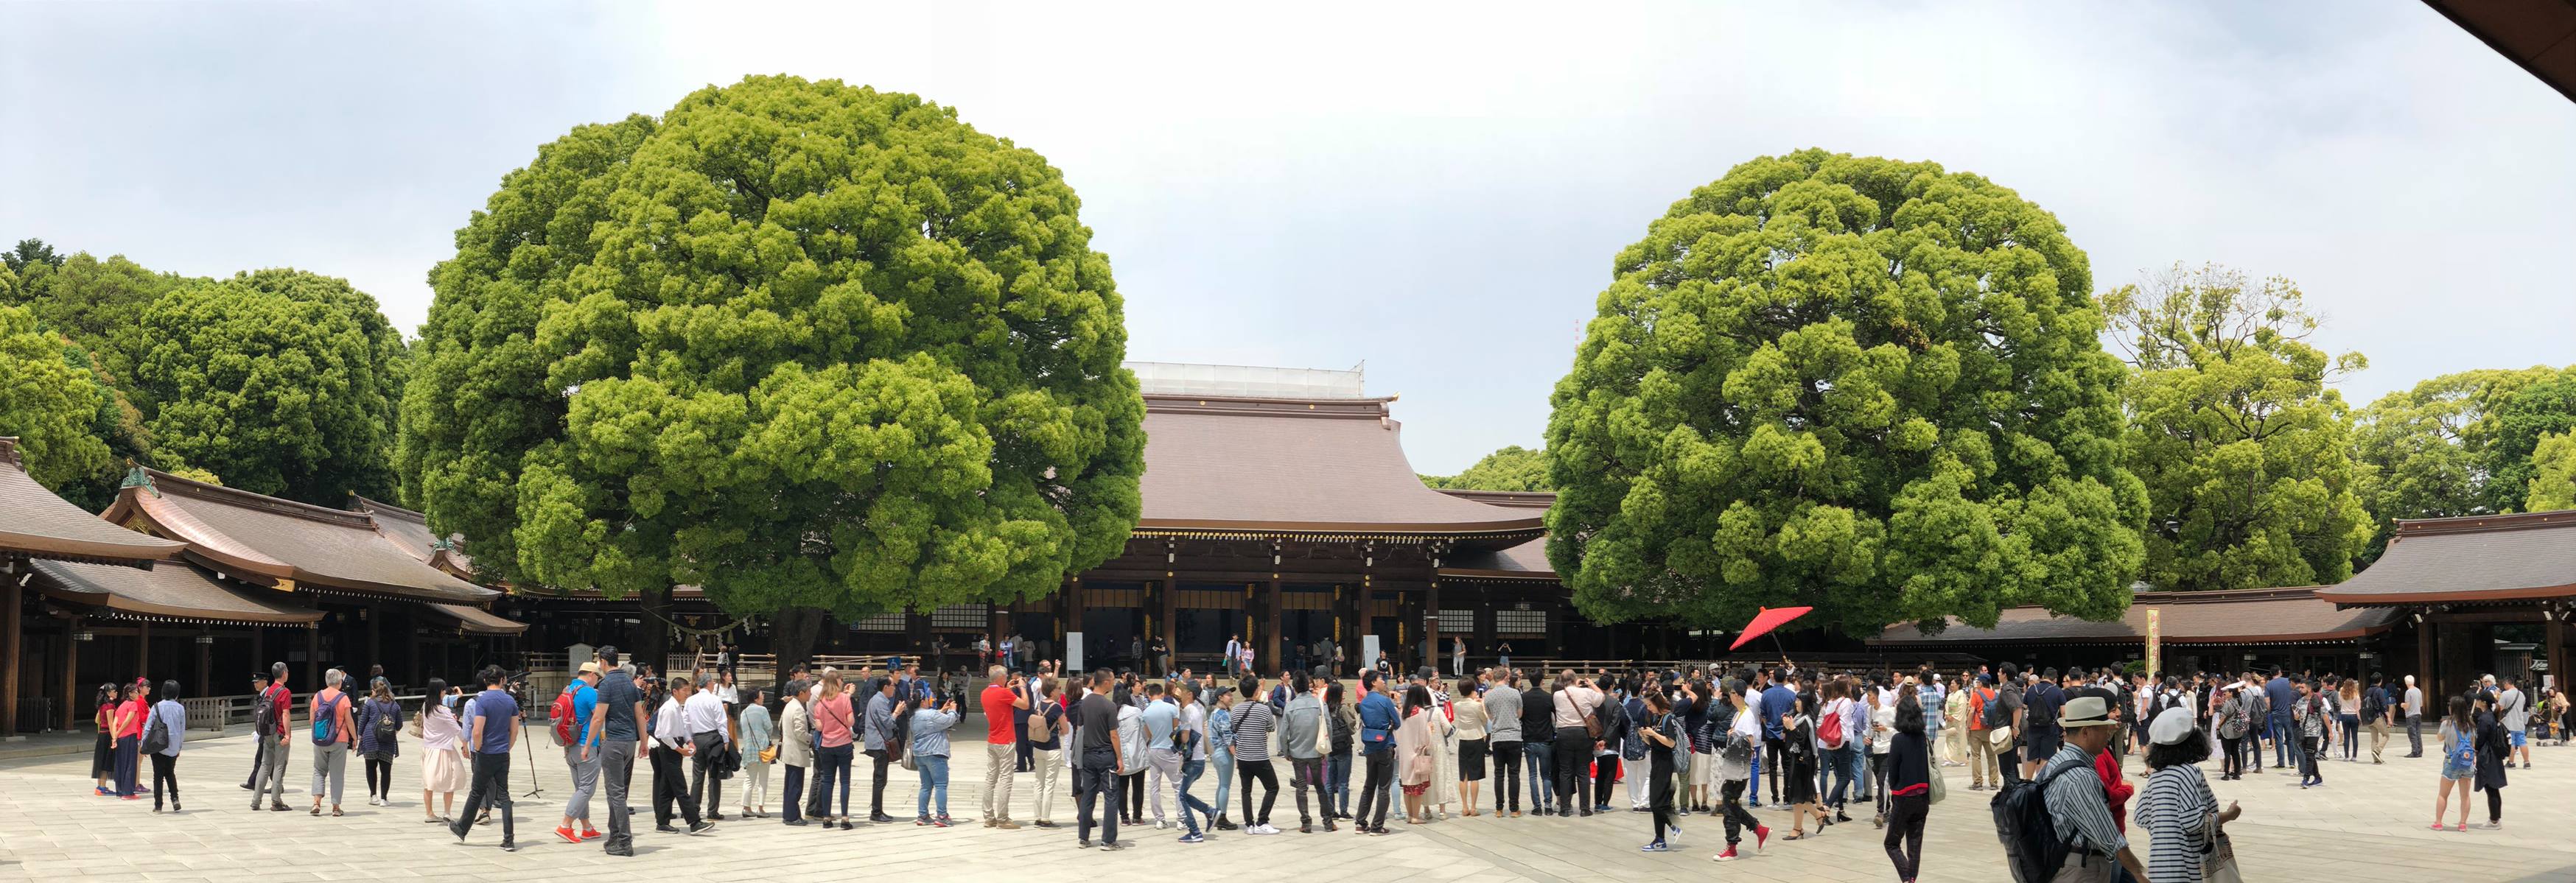 Dòng người xếp hàng chờ xem đám cưới truyền thống ở đền Meiji.